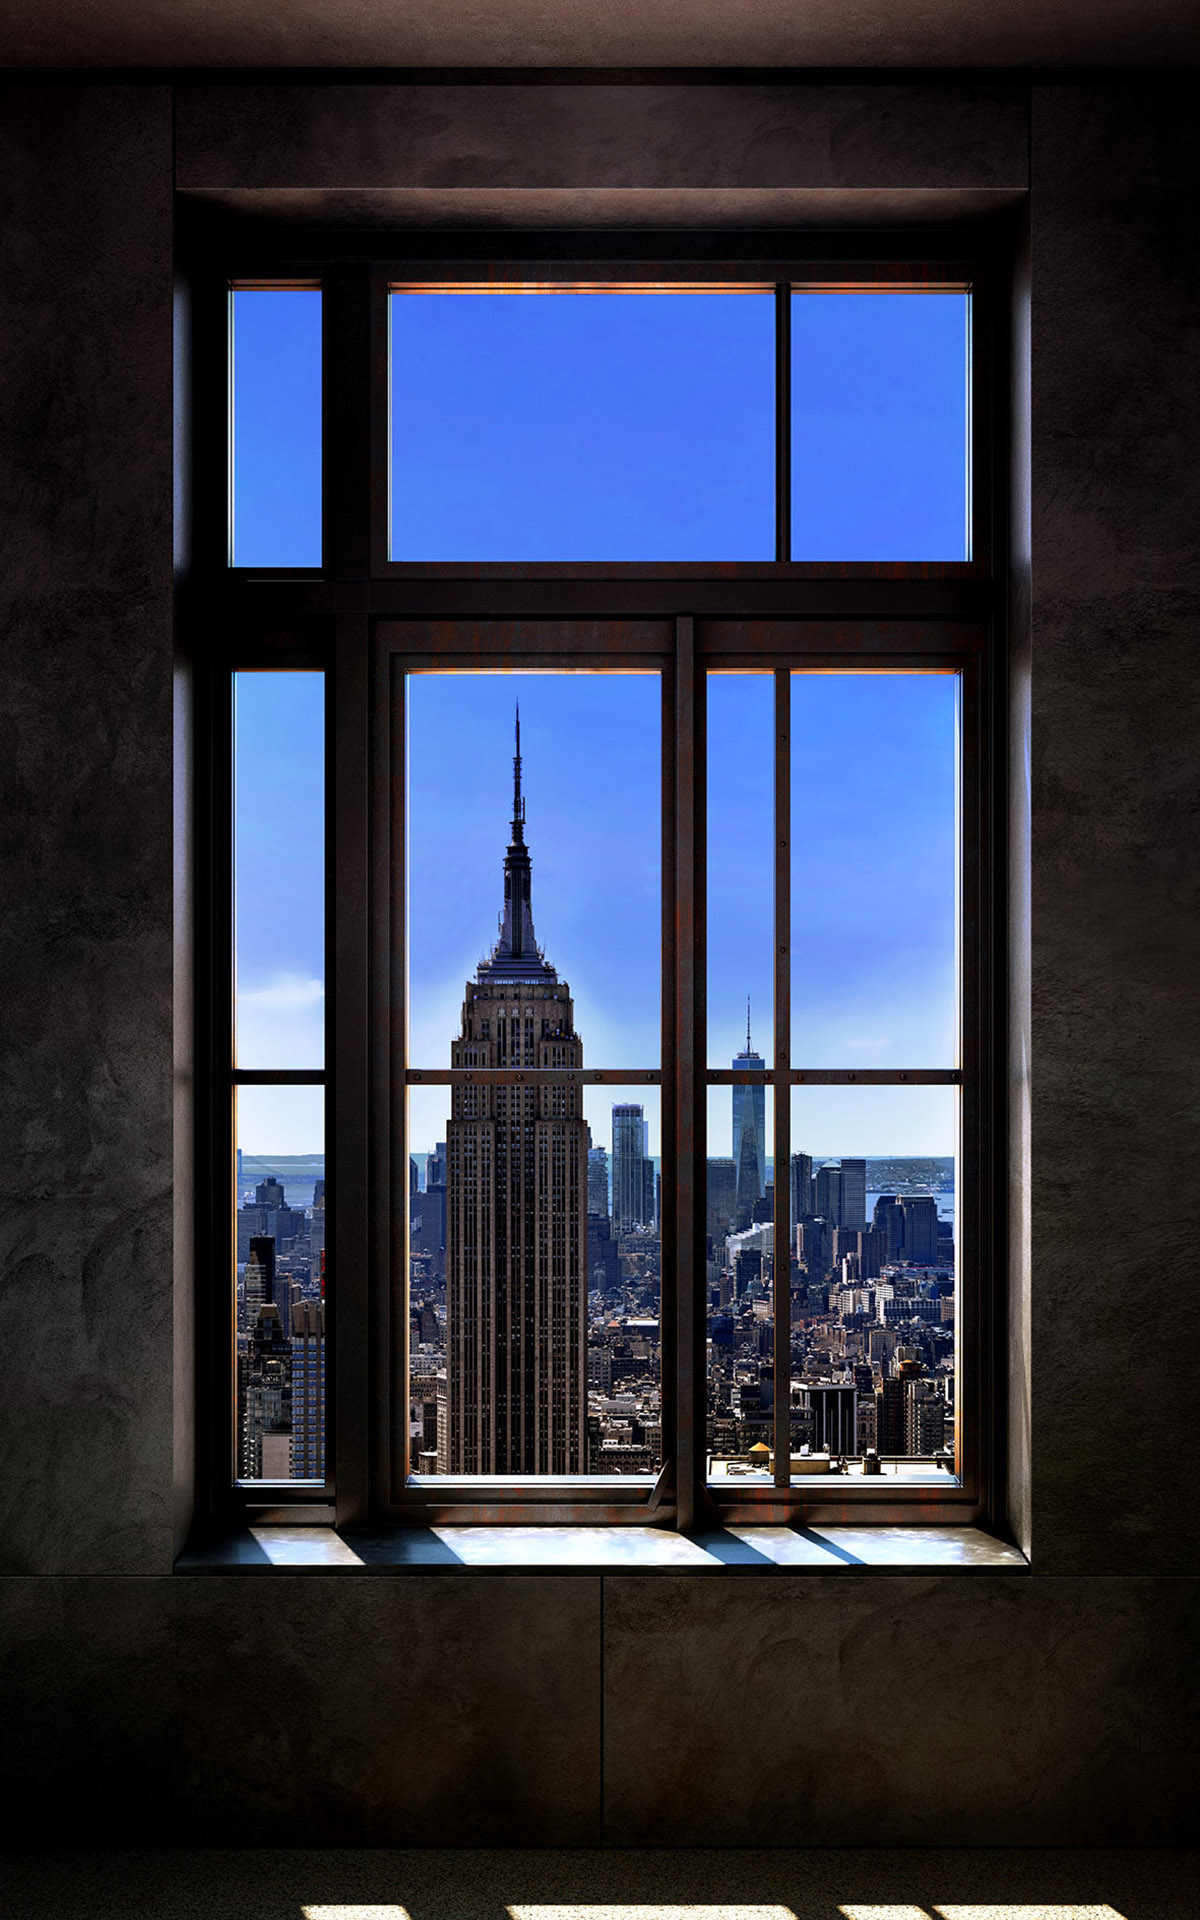 Luc Dratwa Photographie sur dibond Série Windows 2.0 The fifth window